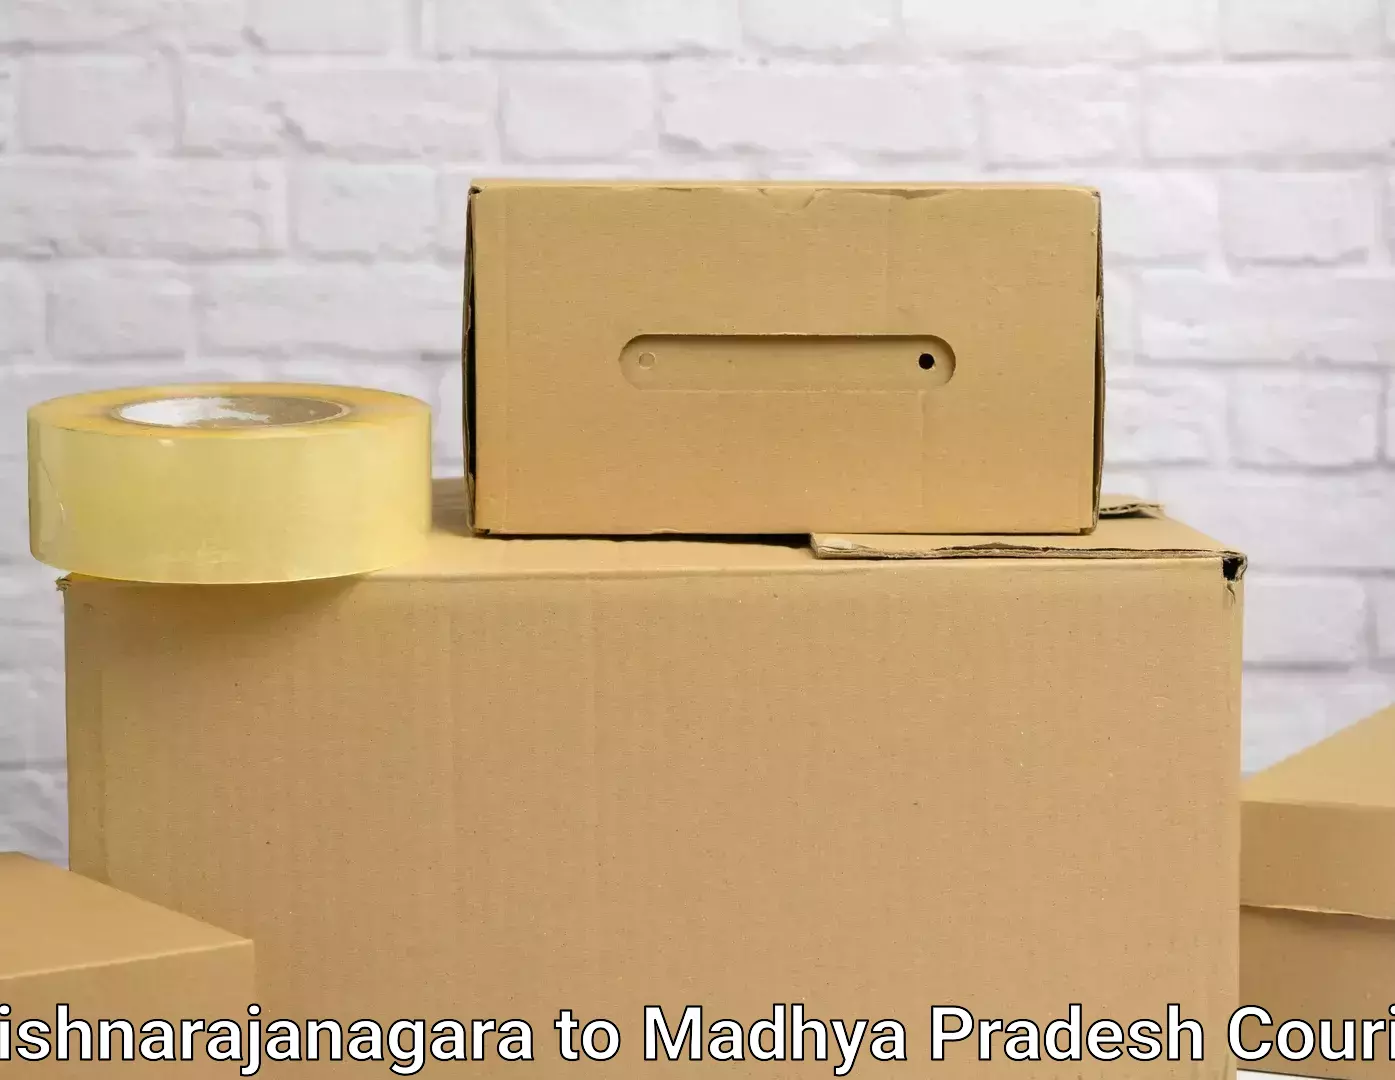 Home moving experts Krishnarajanagara to Raipur Karchuliyan